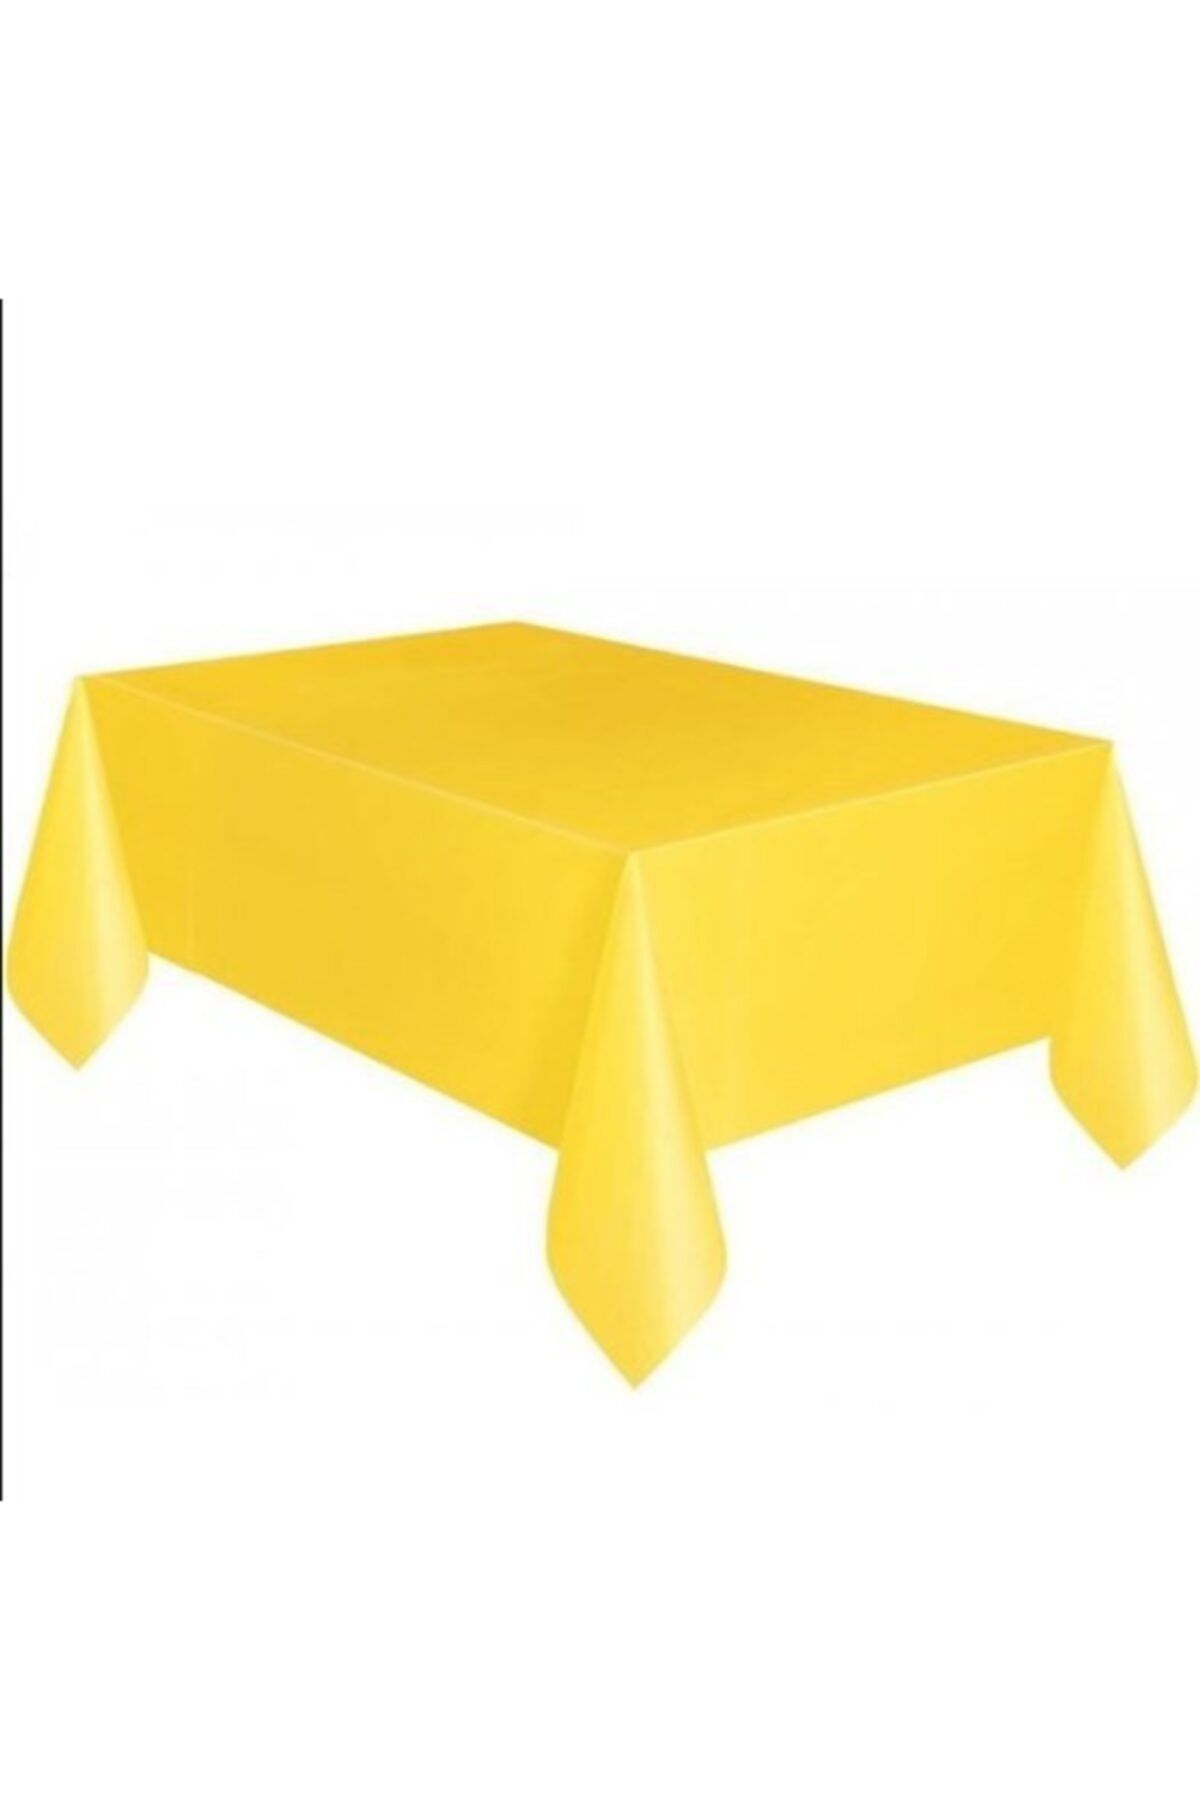 Genel Markalar Sarı Kullan At Plastik Parti Masa Örtüsü 120x180 Cm